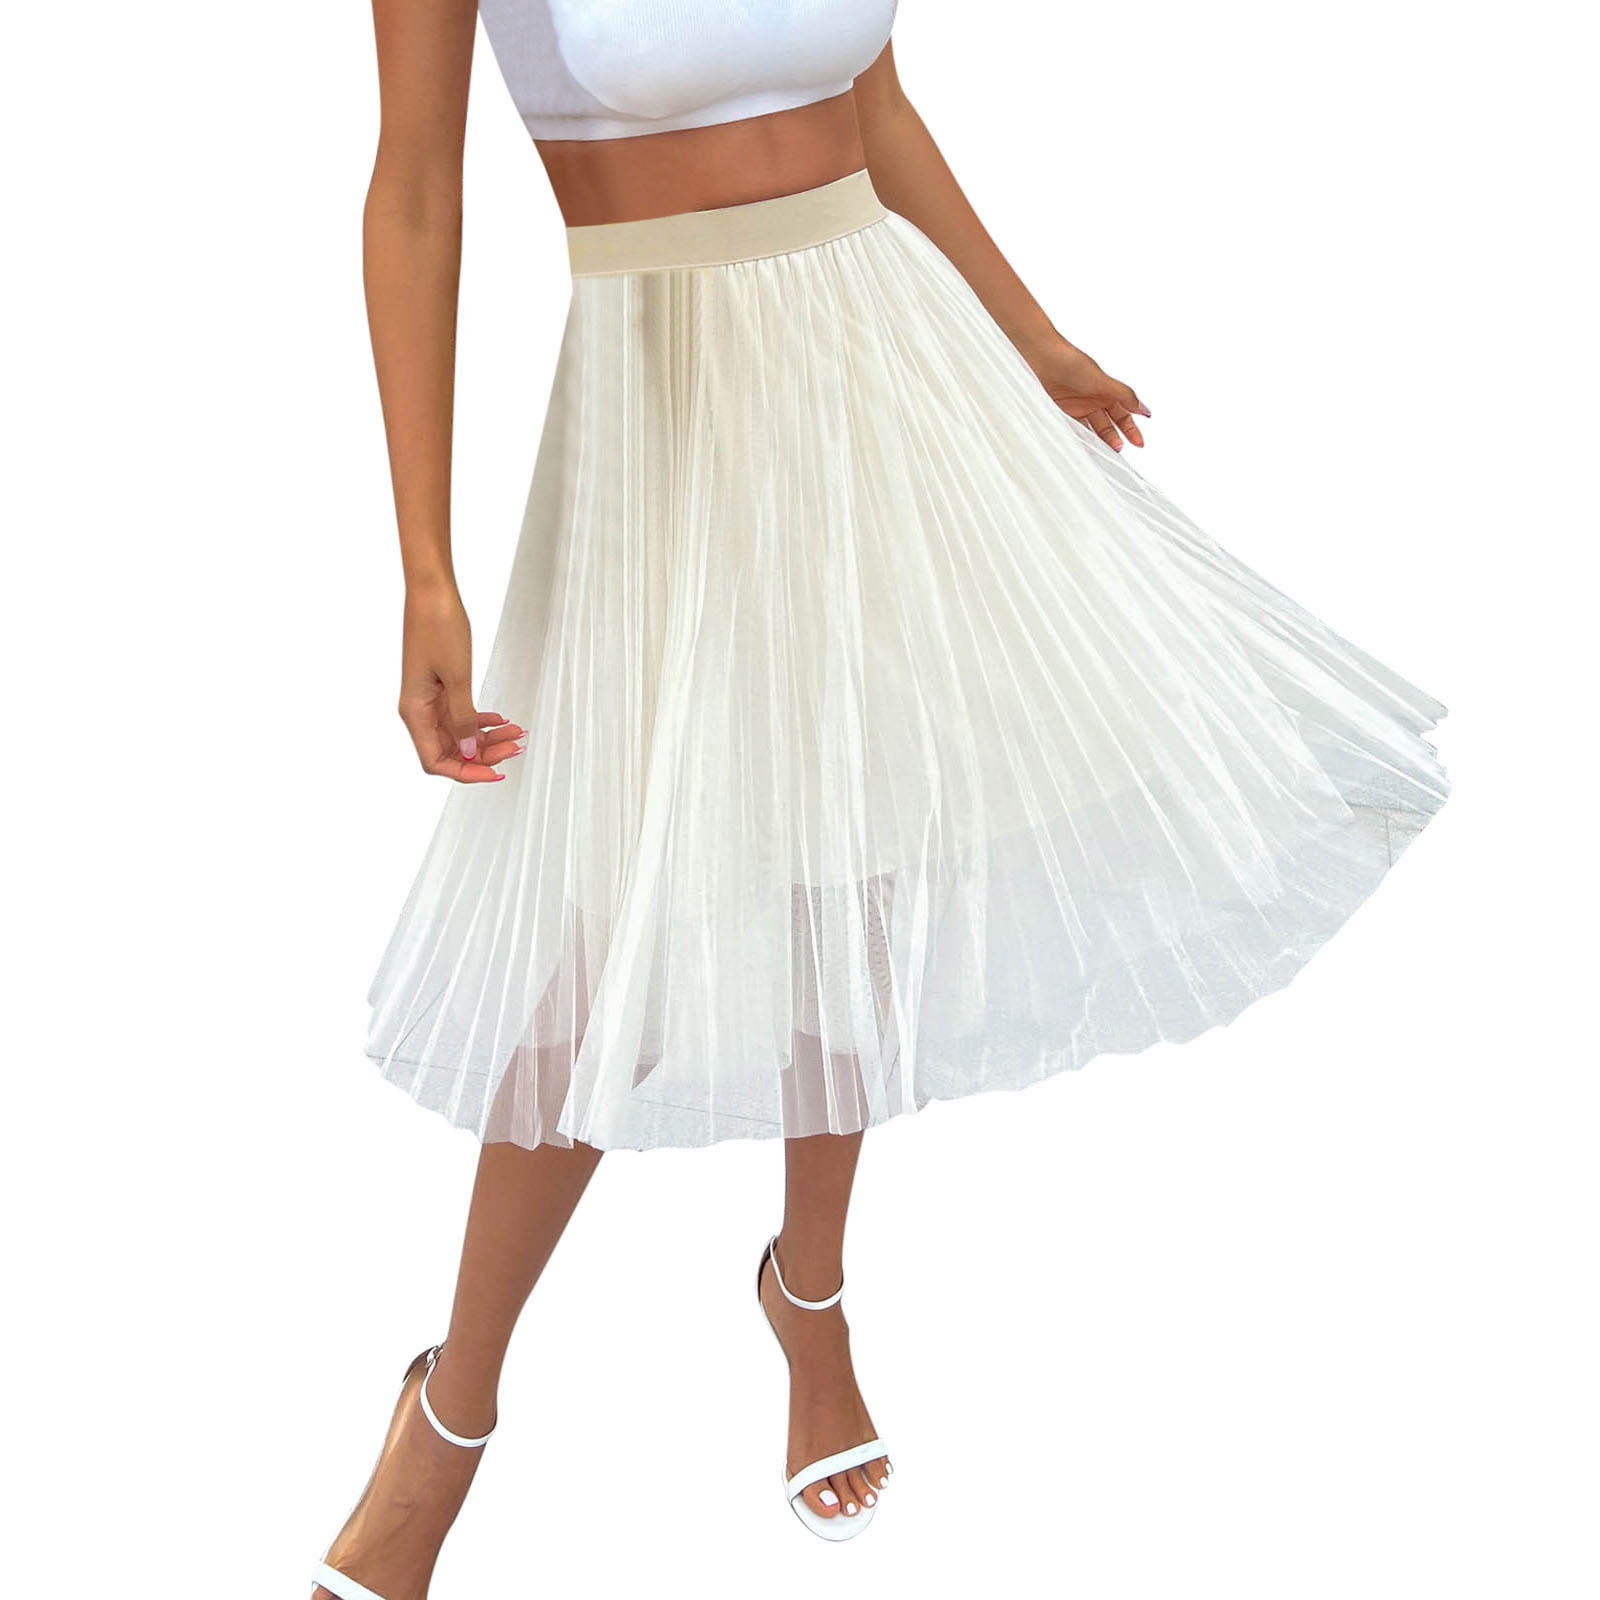 White Cotton A Line Skirt Cotton Skirt Cotton Dress White Flare Skirt  Princess Skirt Cake Skirt Layered Skirt Made to Order - Etsy